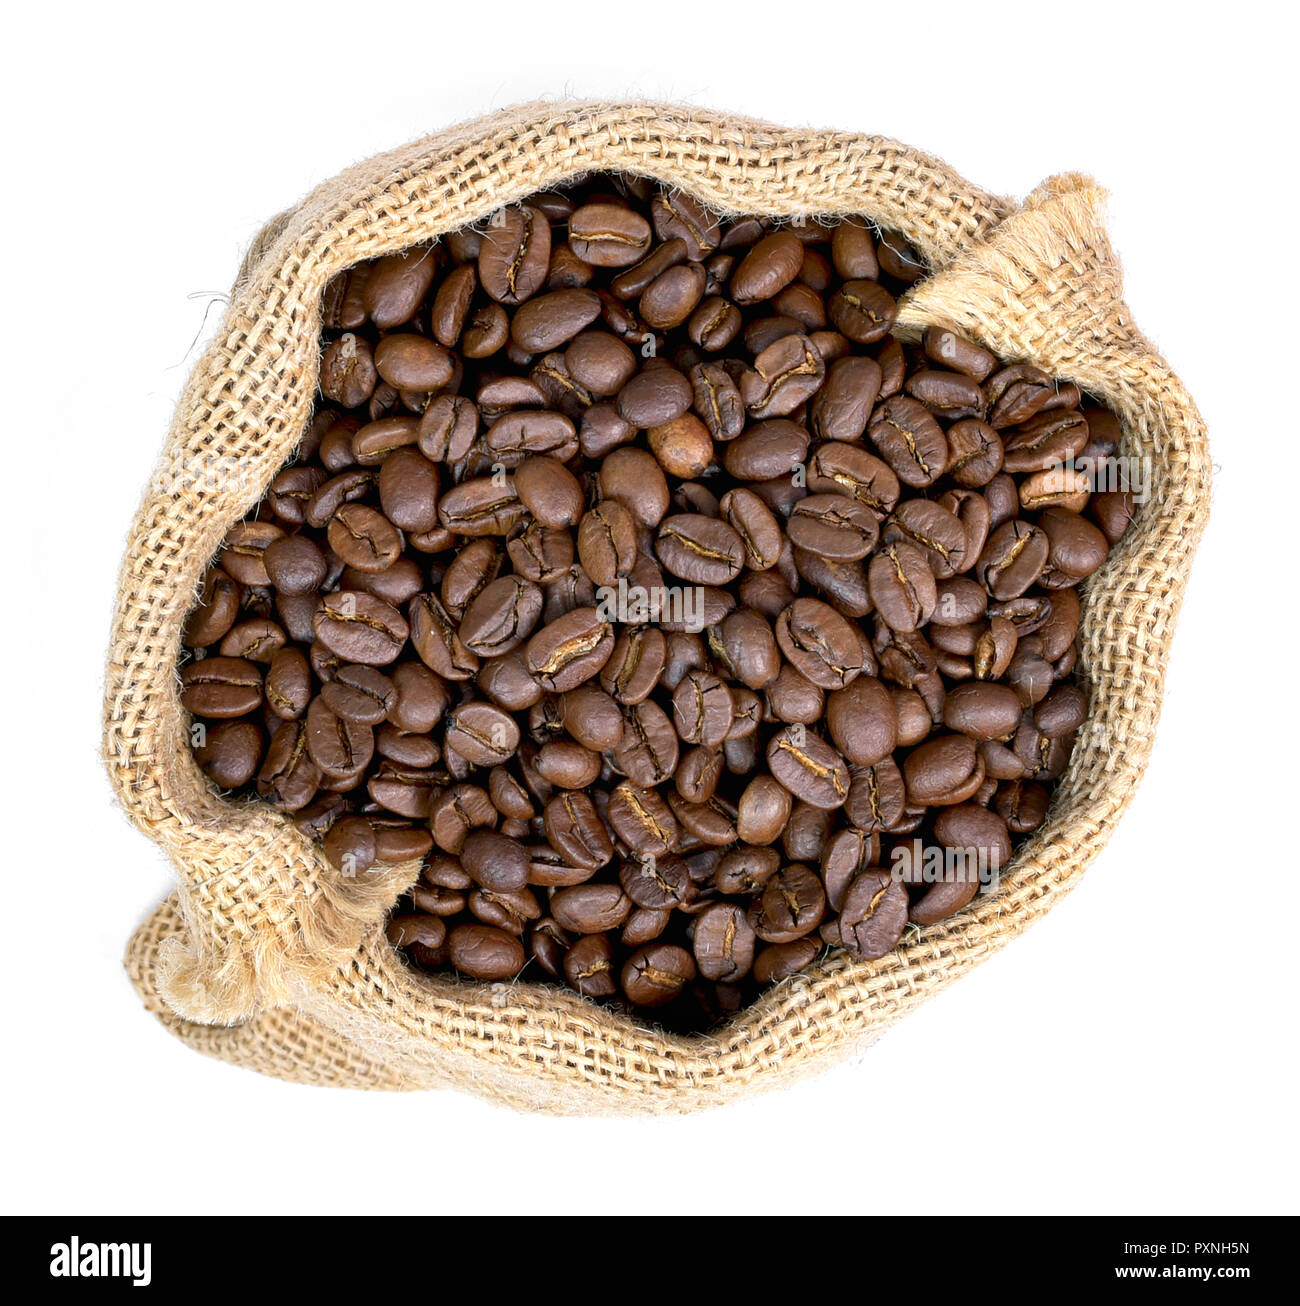 Geröstete Kaffeebohnen in einem sackleinen Sack. Sack Sack mit Kaffeebohnen, auf weißem Hintergrund. Kaffee exportieren. Stockfoto